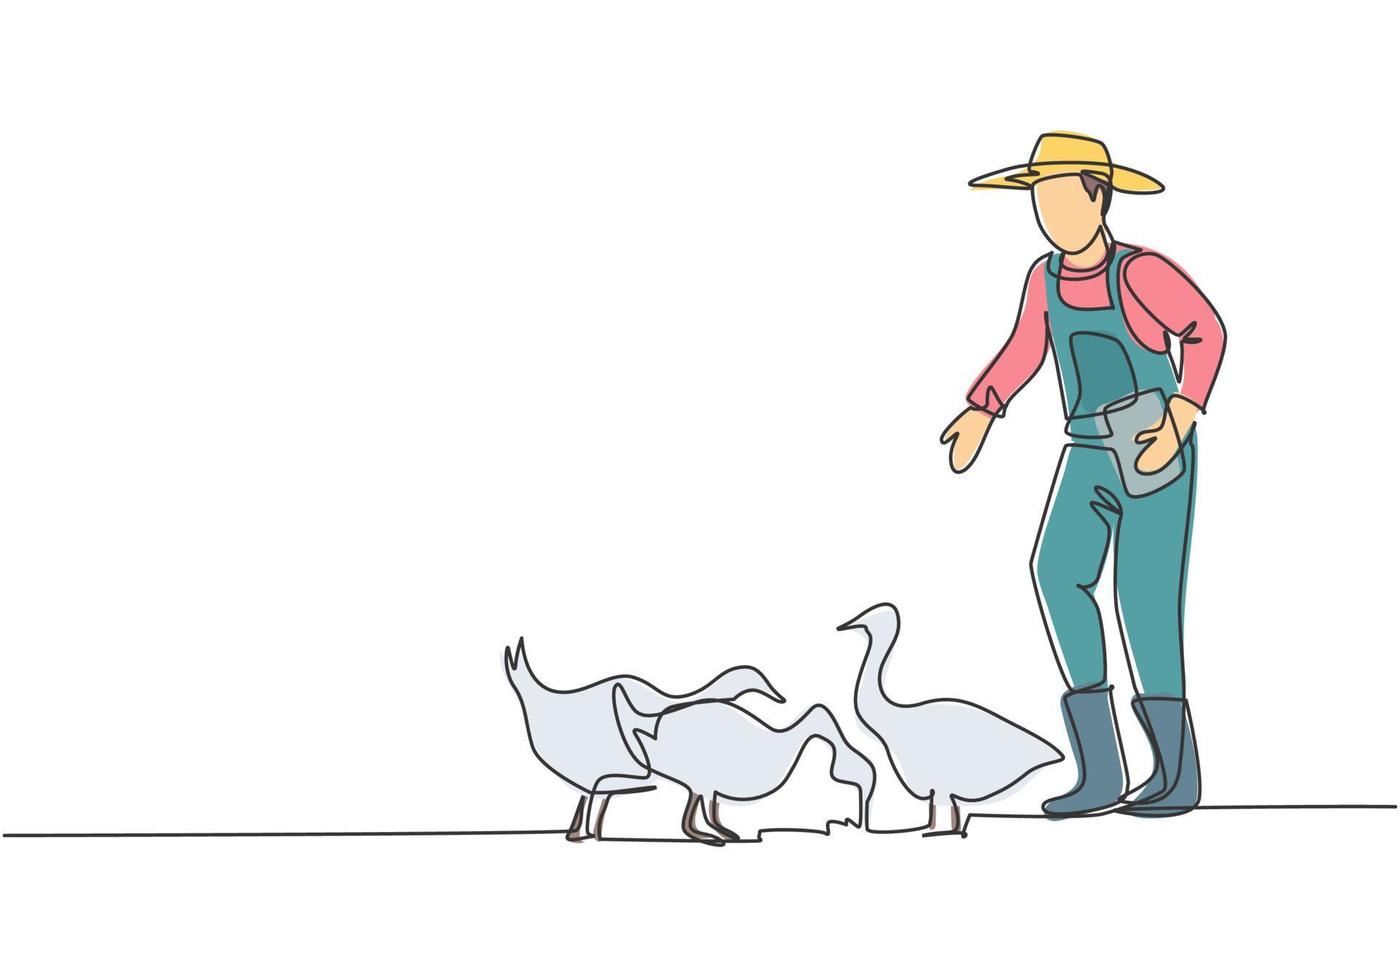 contínuo um desenho de linha jovem fazendeiro está alimentando os gansos para serem saudáveis e produzirem os melhores ovos e carne. agricultura conceito minimalista. ilustração gráfica do vetor do desenho do desenho de linha única.